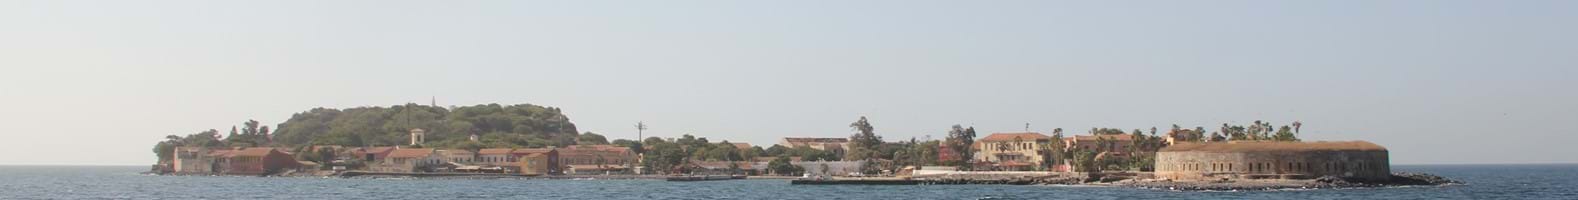 Het slaveneiland Gorée (goede reede) in Senegal. 